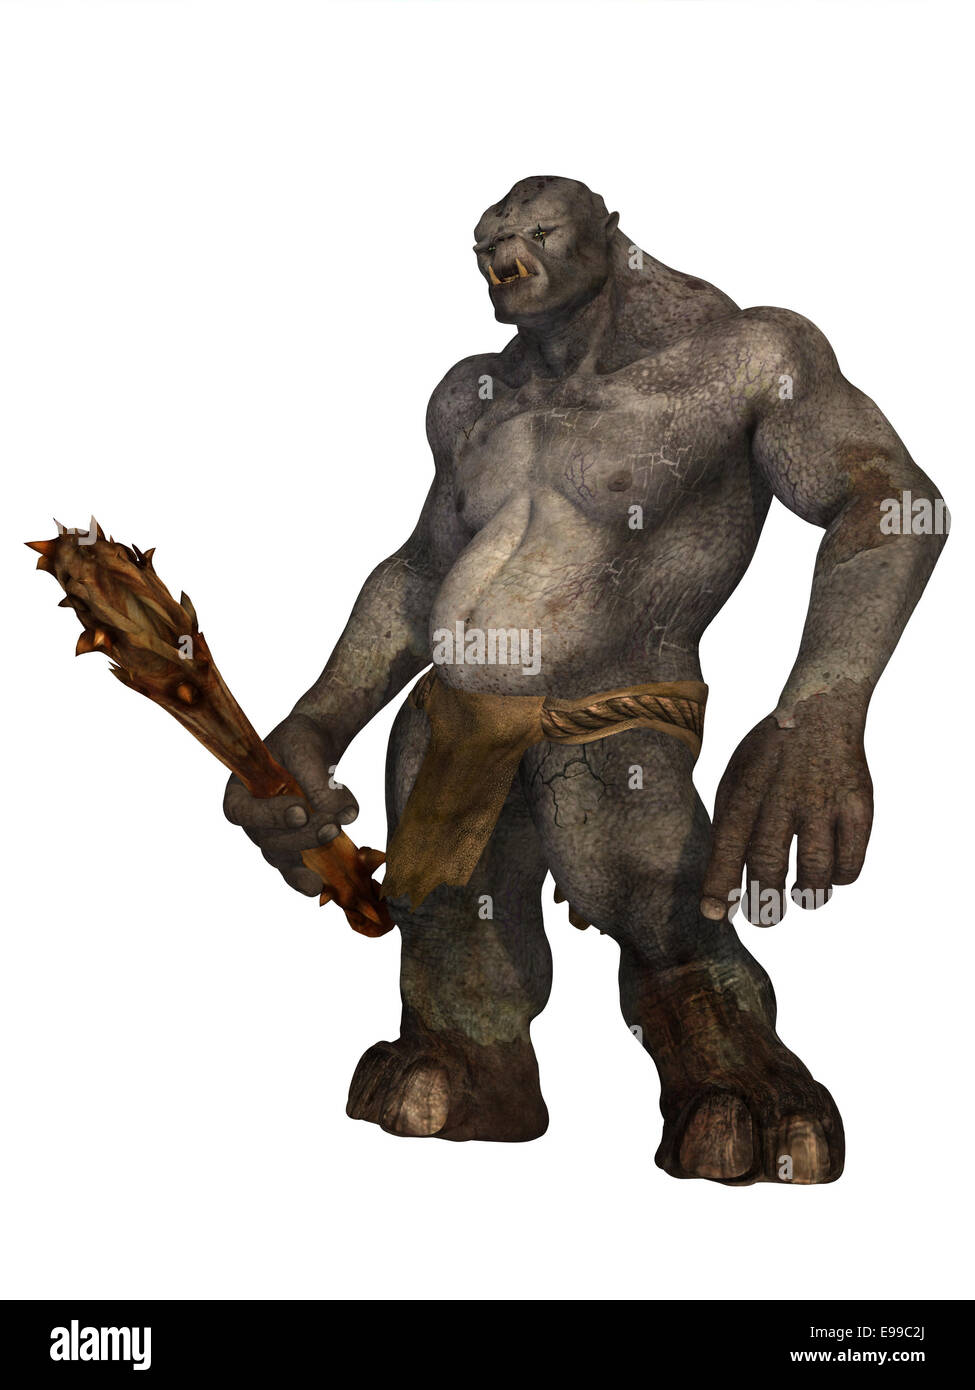 Piel gris temible ogro o troll con club de madera aislado en blanco Foto de stock